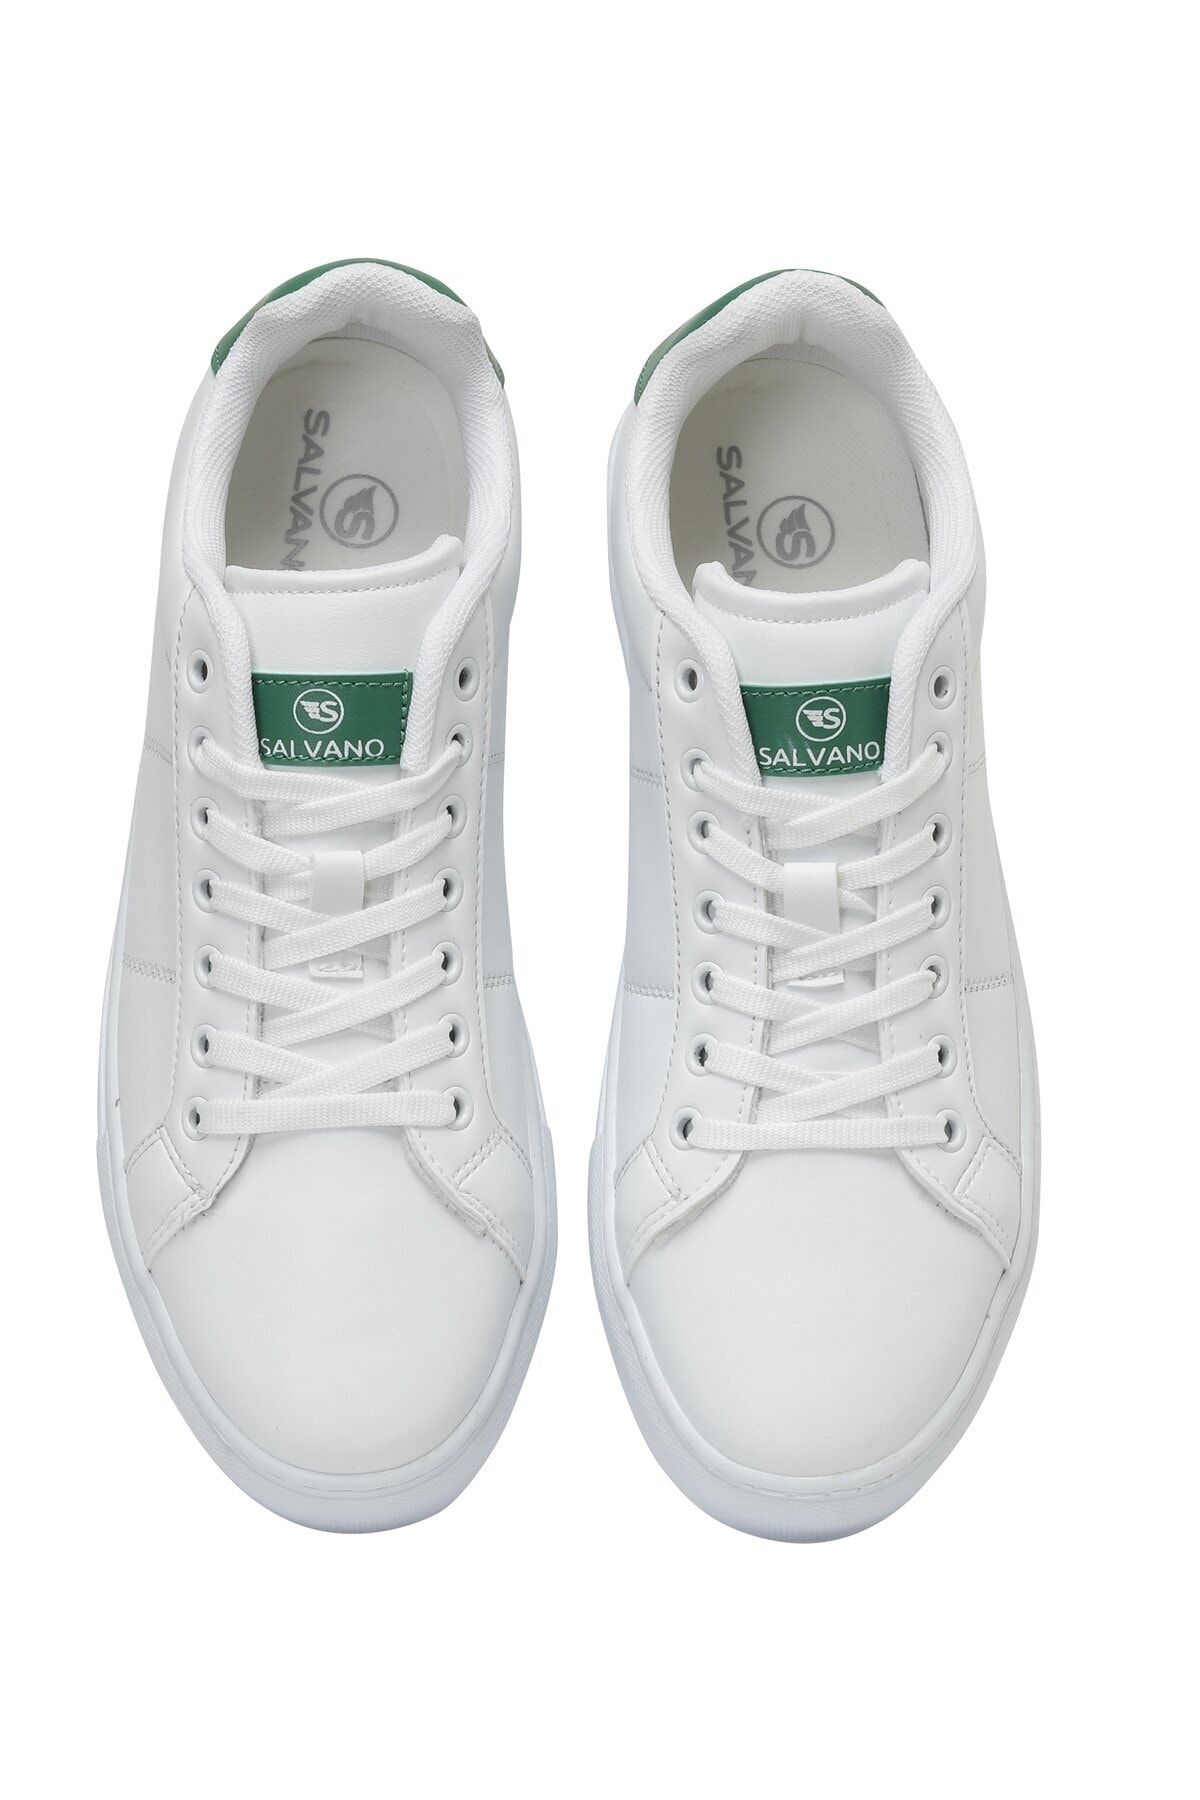 Salvano 3fx Beyaz Erkek Sneaker